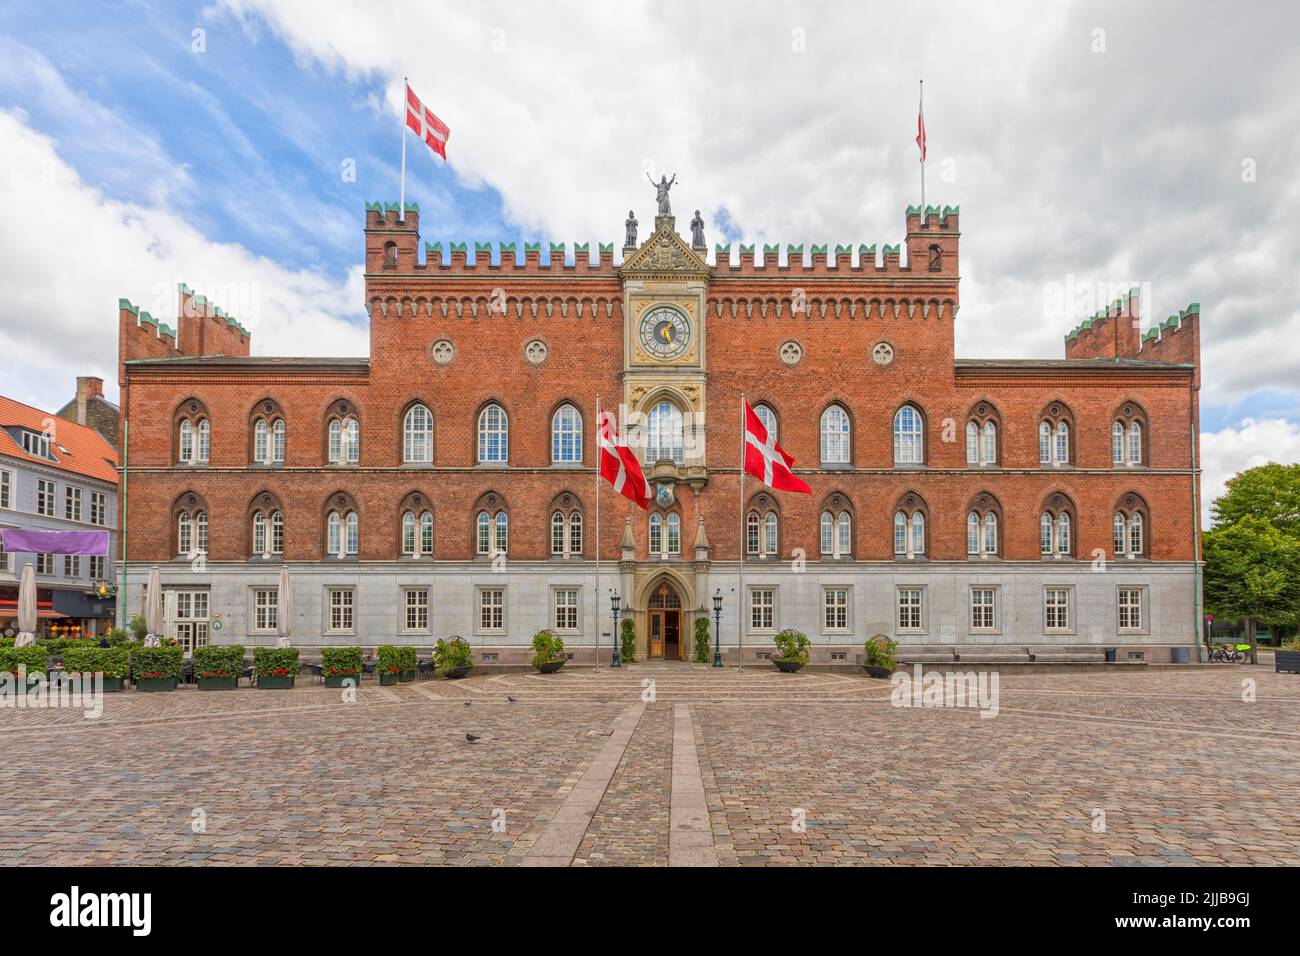 Ayuntamiento de Odense, construido en el estilo del historicismo, parecido al Palazzo Publico de Siena Foto de stock